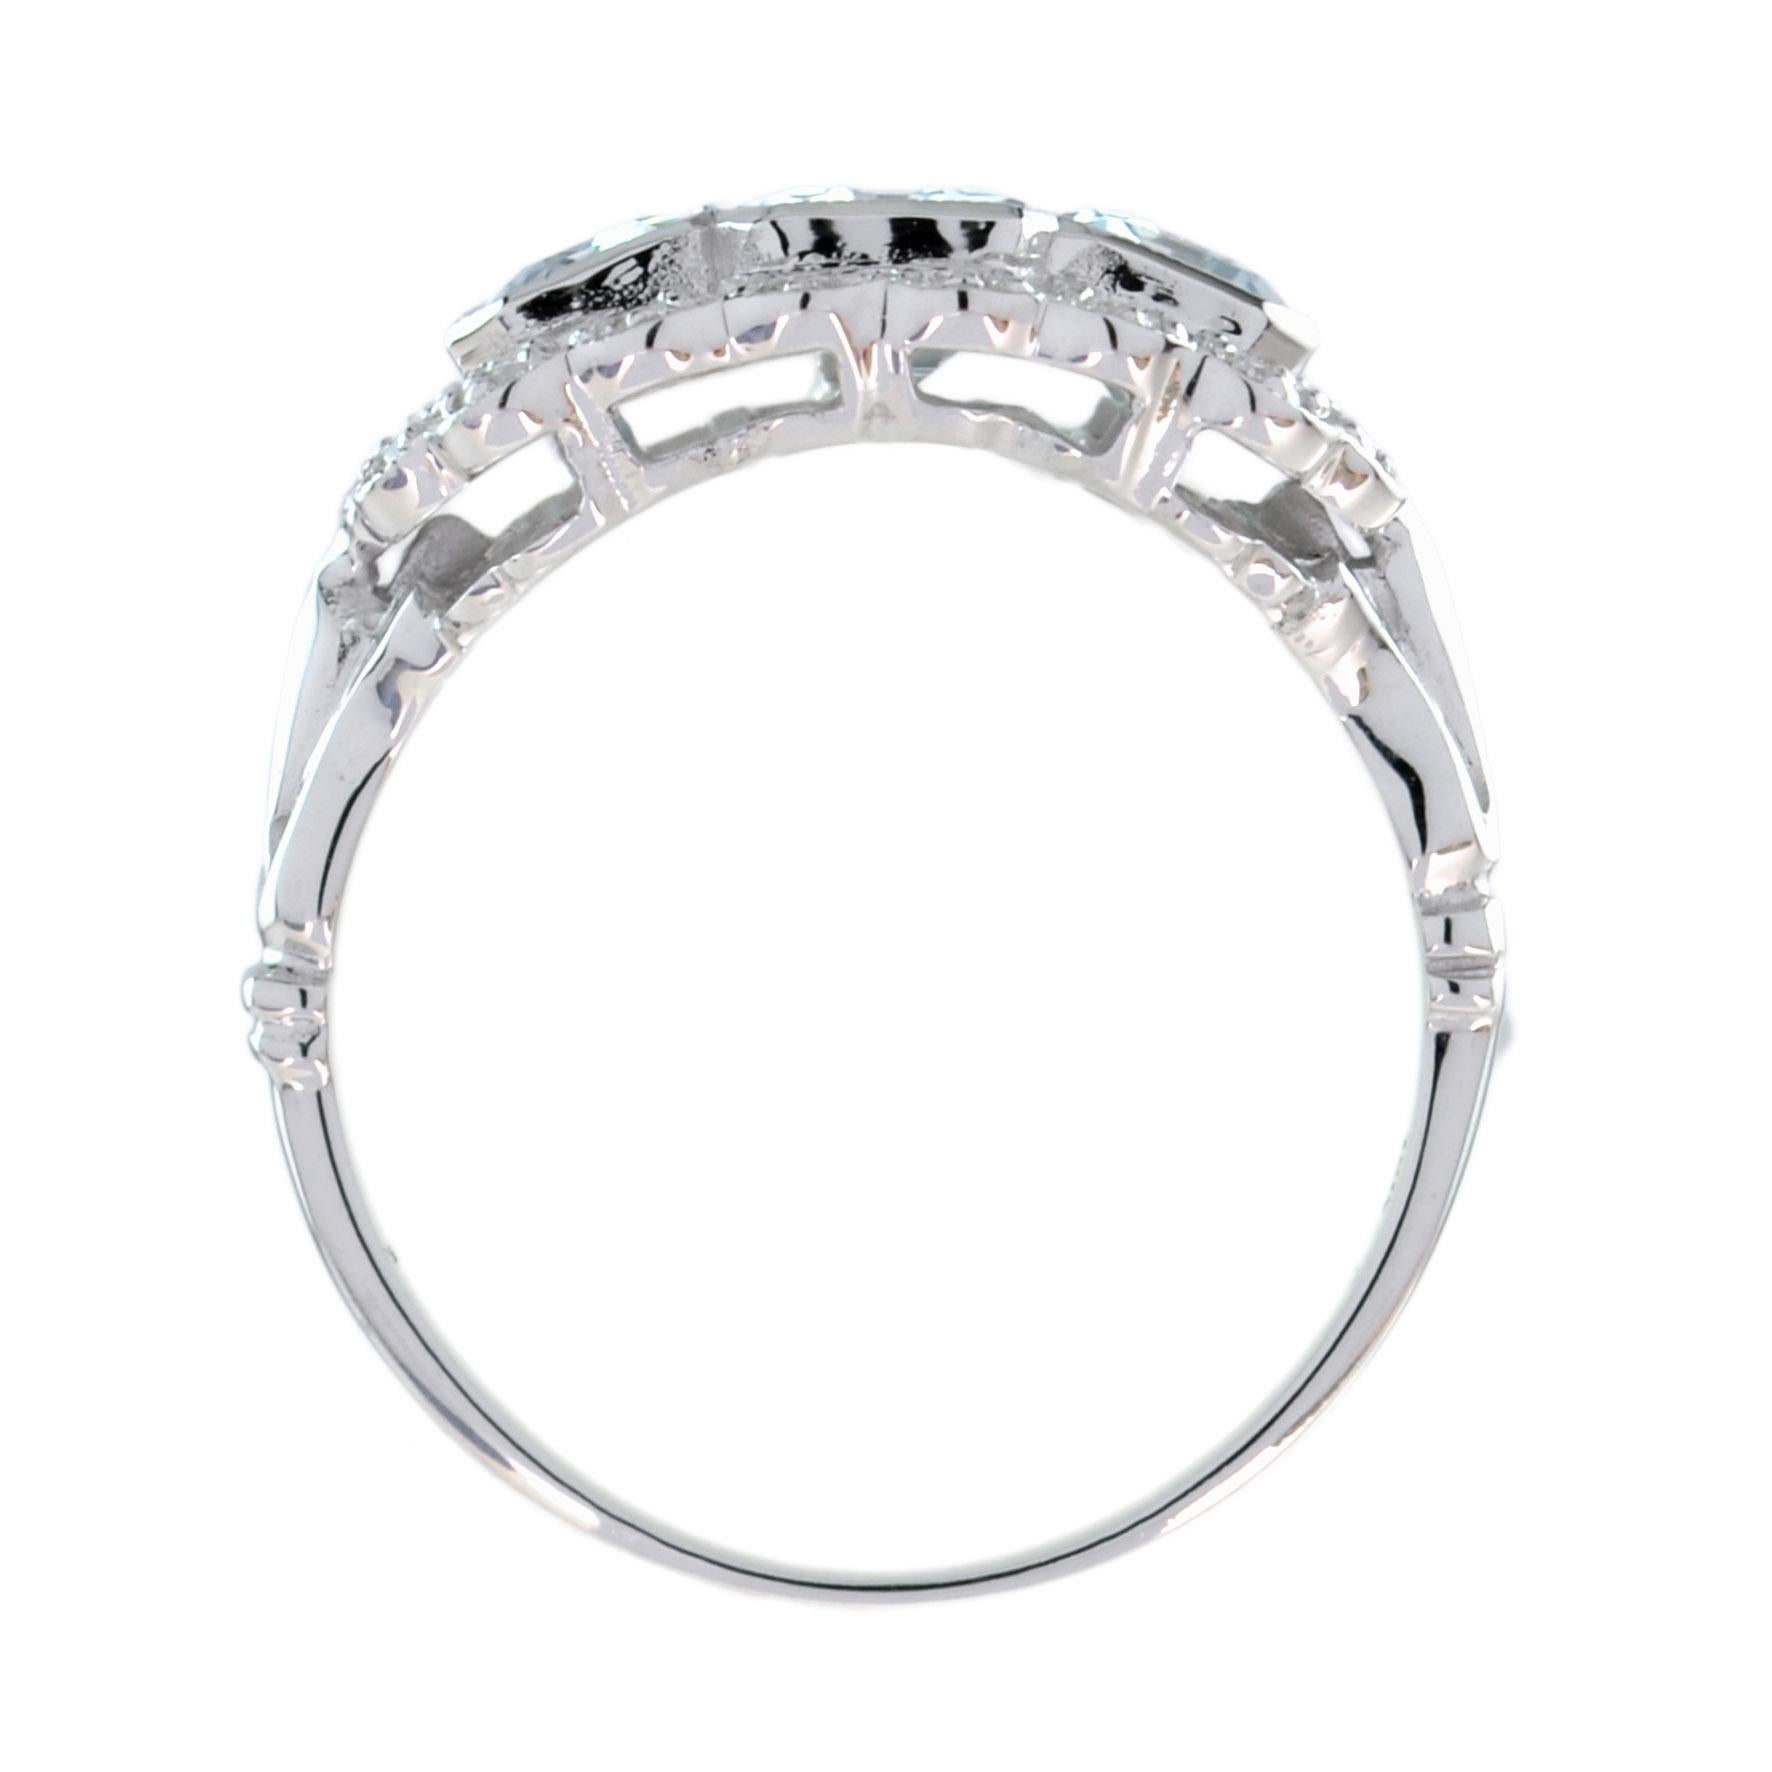 For Sale:  Emerald Cut Aquamarine and Diamond Three Stone Ring in Platinum950 5